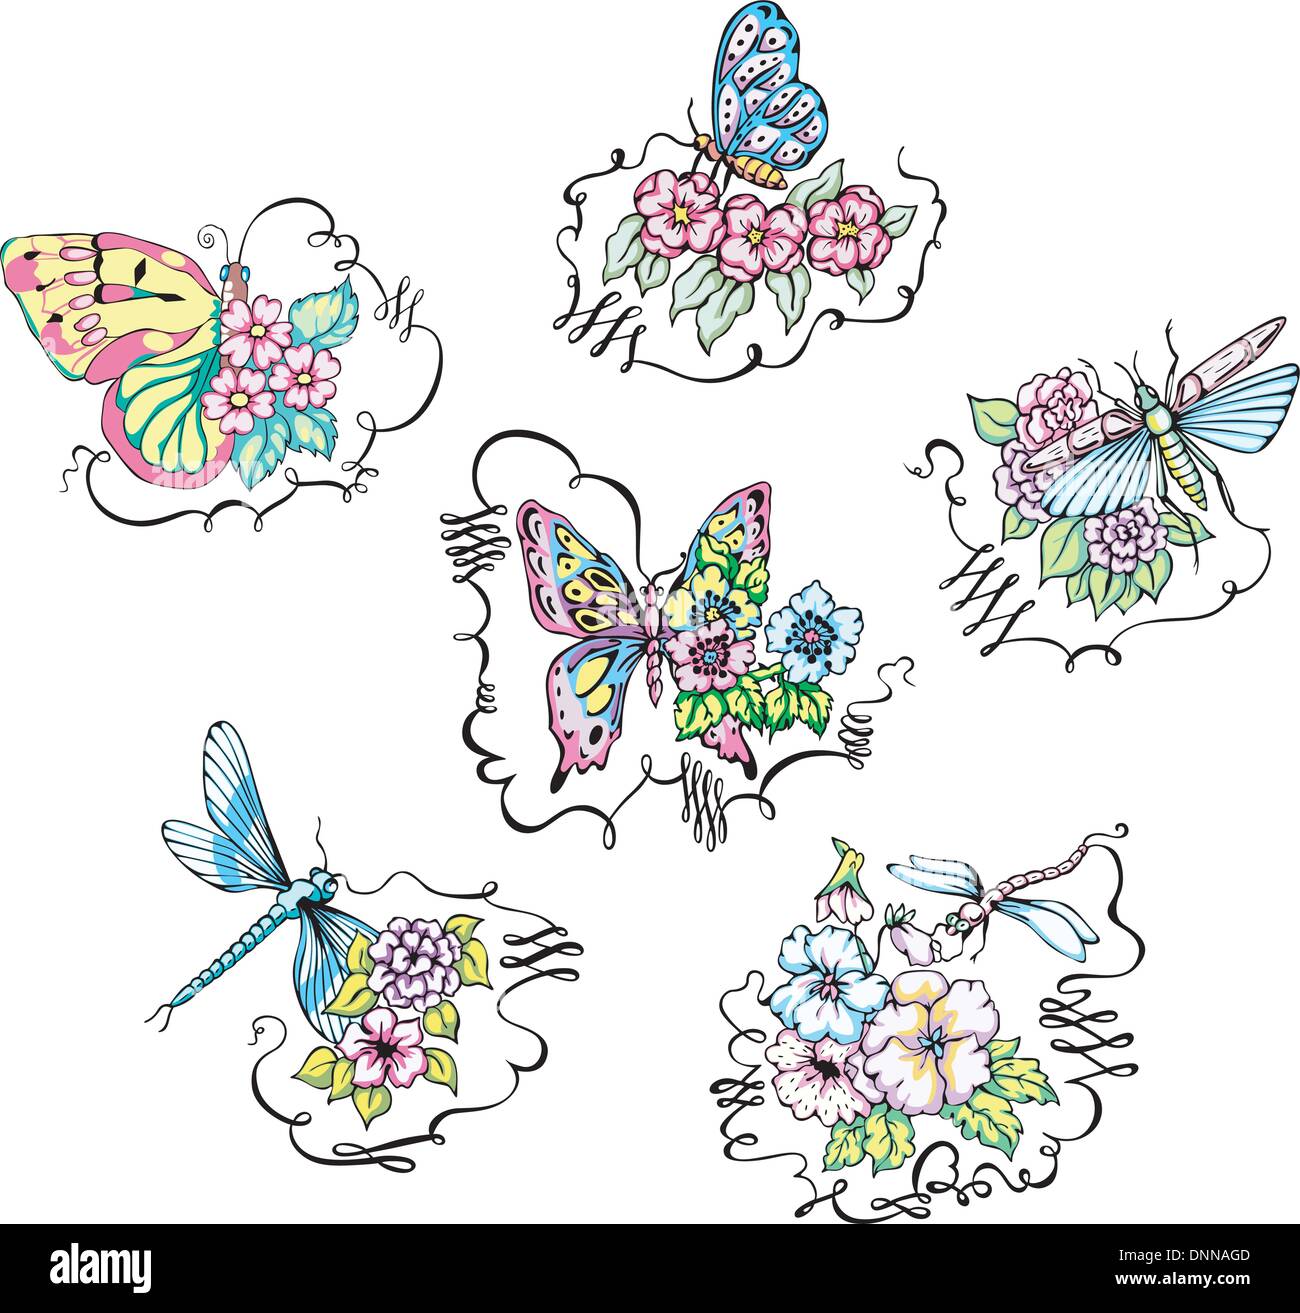 Schmetterlinge und Libellen auf Blumen. Satz von Farbe-Vektor-Illustrationen. Stock Vektor